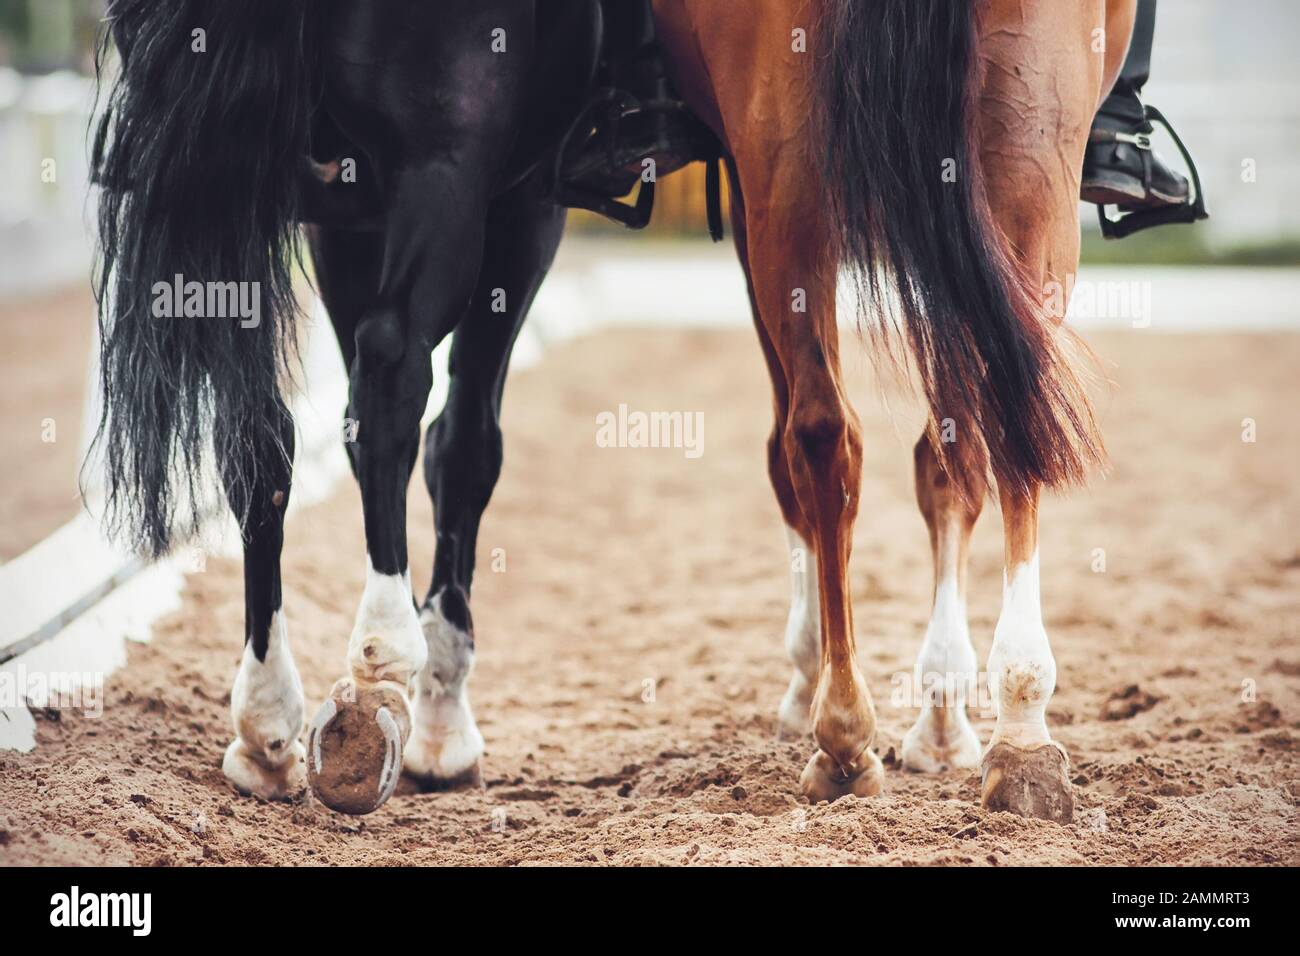 Zwei Pferde, ein schwarzes und ein Sorrel mit langen Schwänzen und Reitern in ihren Sätteln, ziehen sich langsam über die Sandarena hinweg. Stockfoto